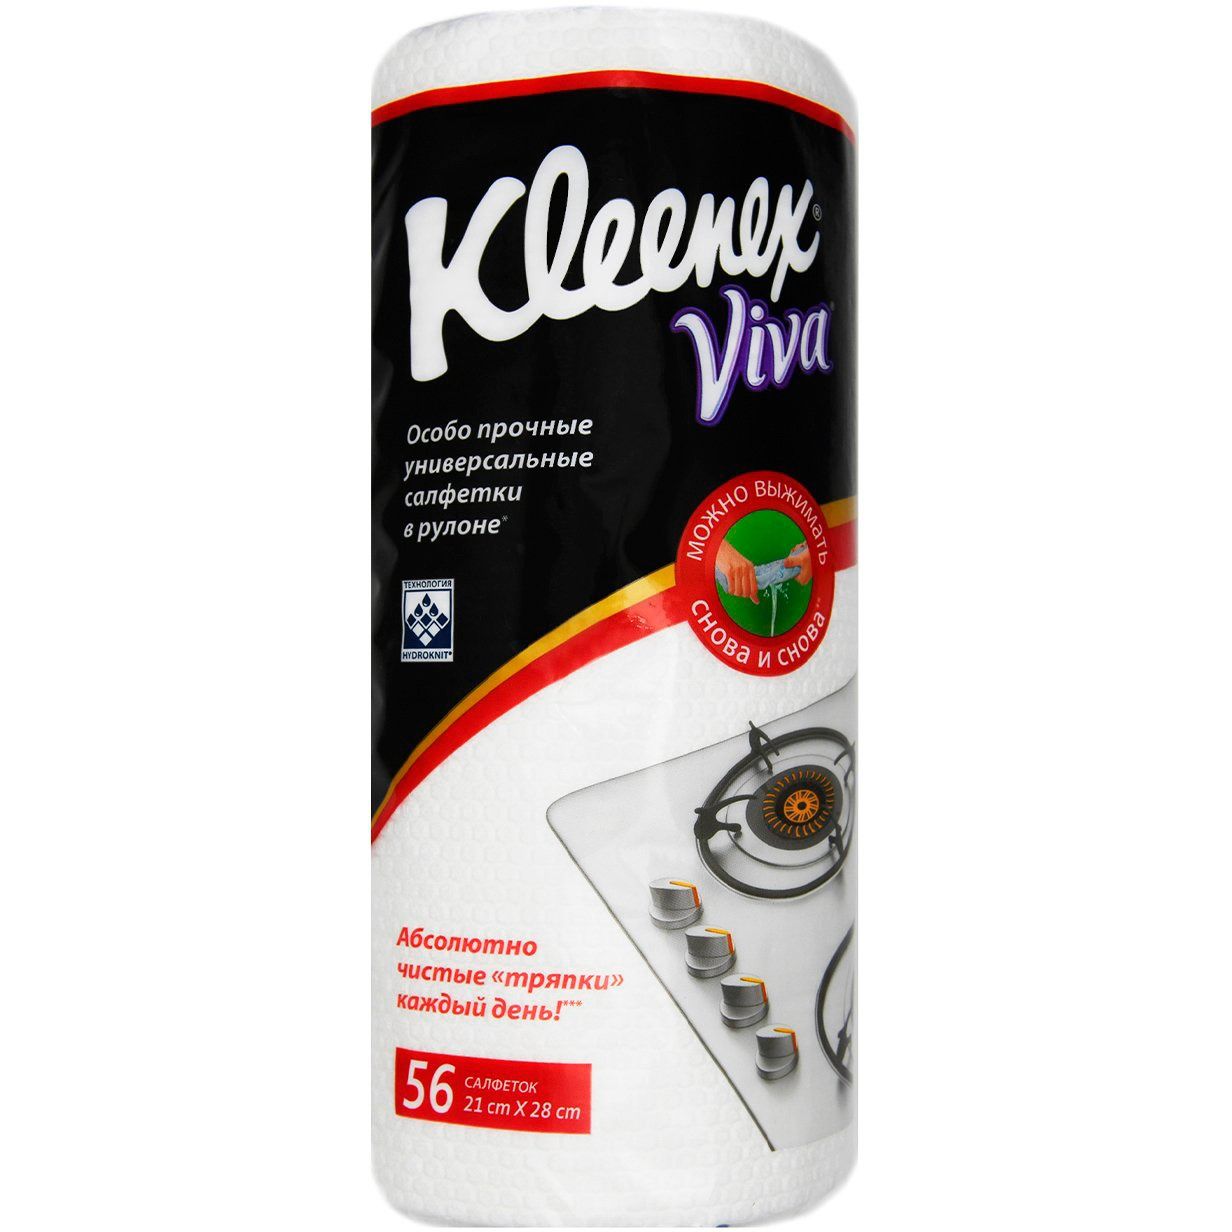 Салфетки Kleenex Viva универсальные многоразовые 56 шт. - фото 1